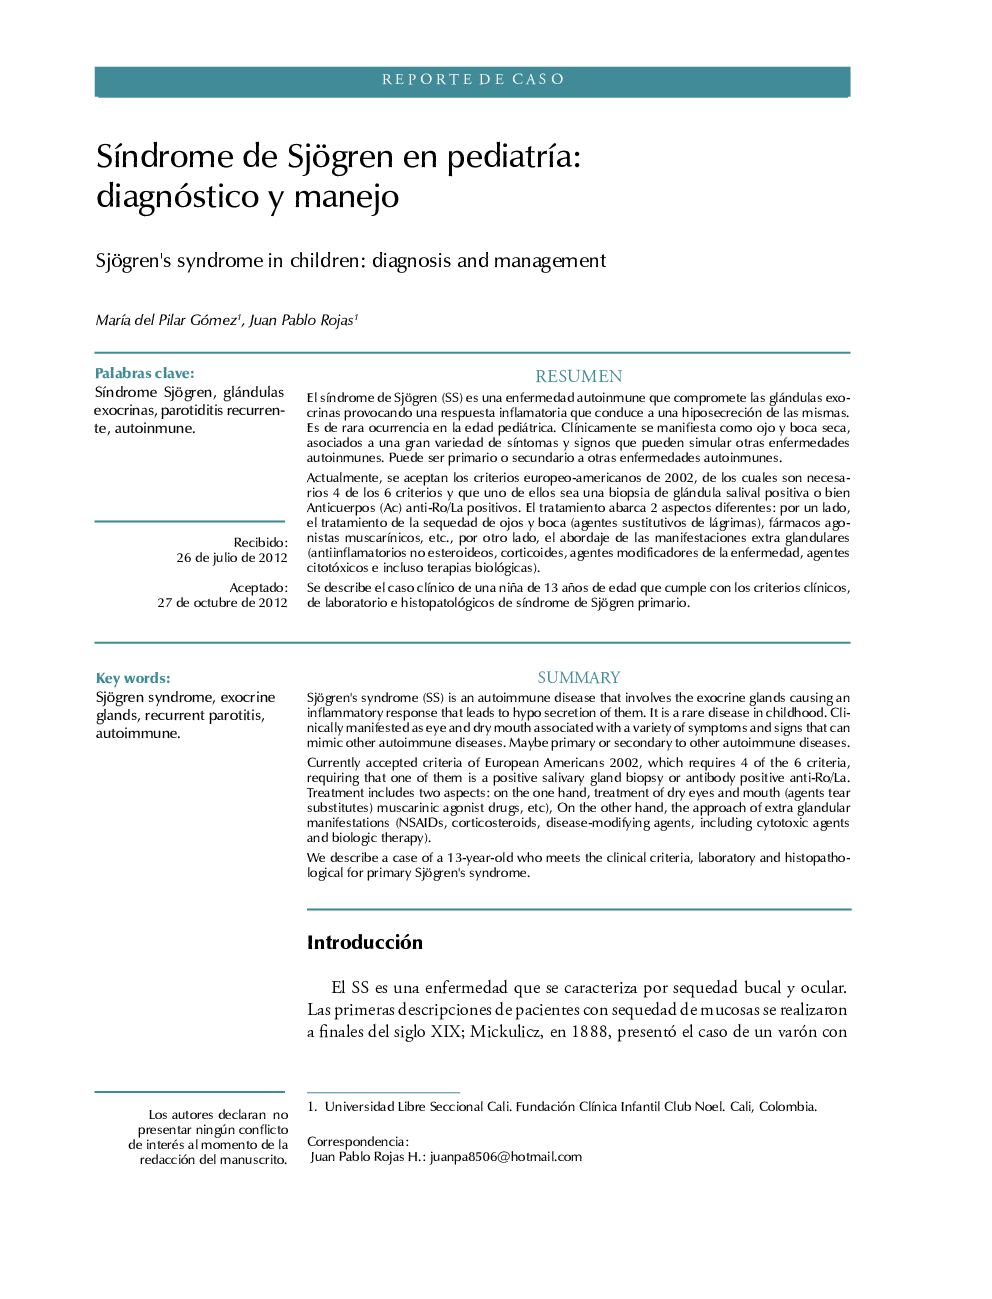 SÃ­ndrome de Sjögren en pediatrÃ­a: diagnóstico y manejo